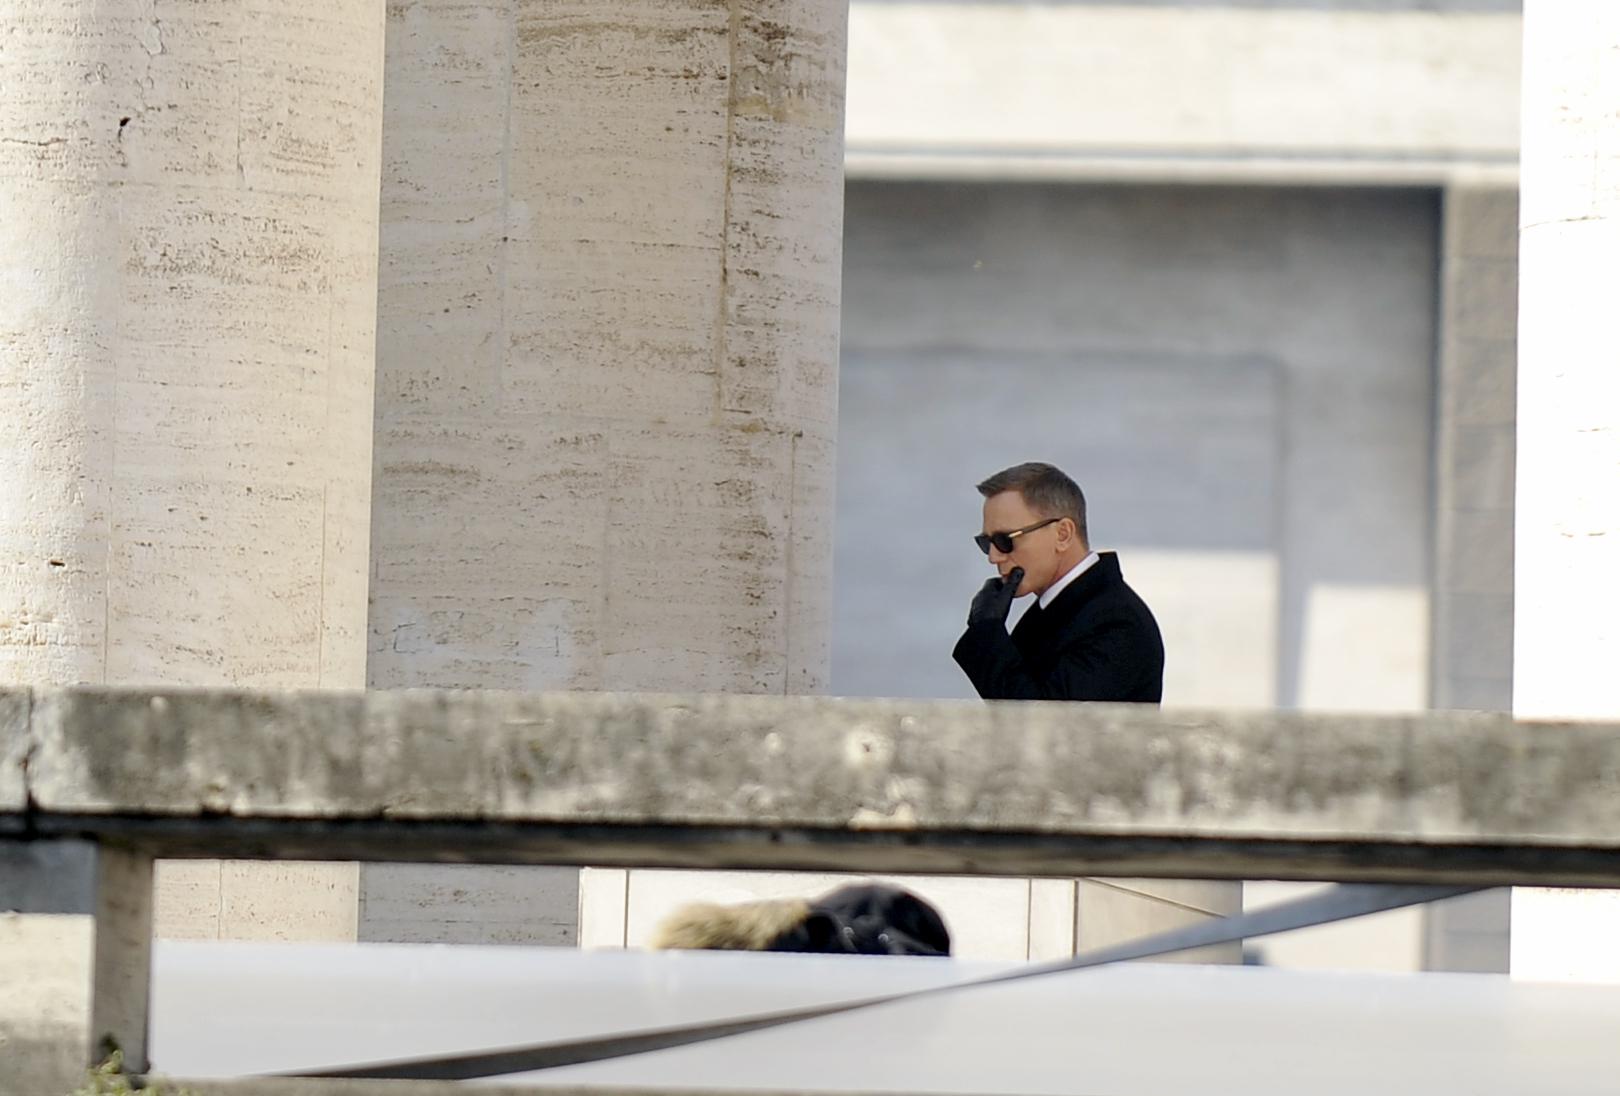 Roma, 19 febbraio 2015. Eur, piazza Giovanni Agnelli, Daniel Craig e Monica Bellucci sul set del nuovo 007 (foto Adnkronos/Cristiano Camera)